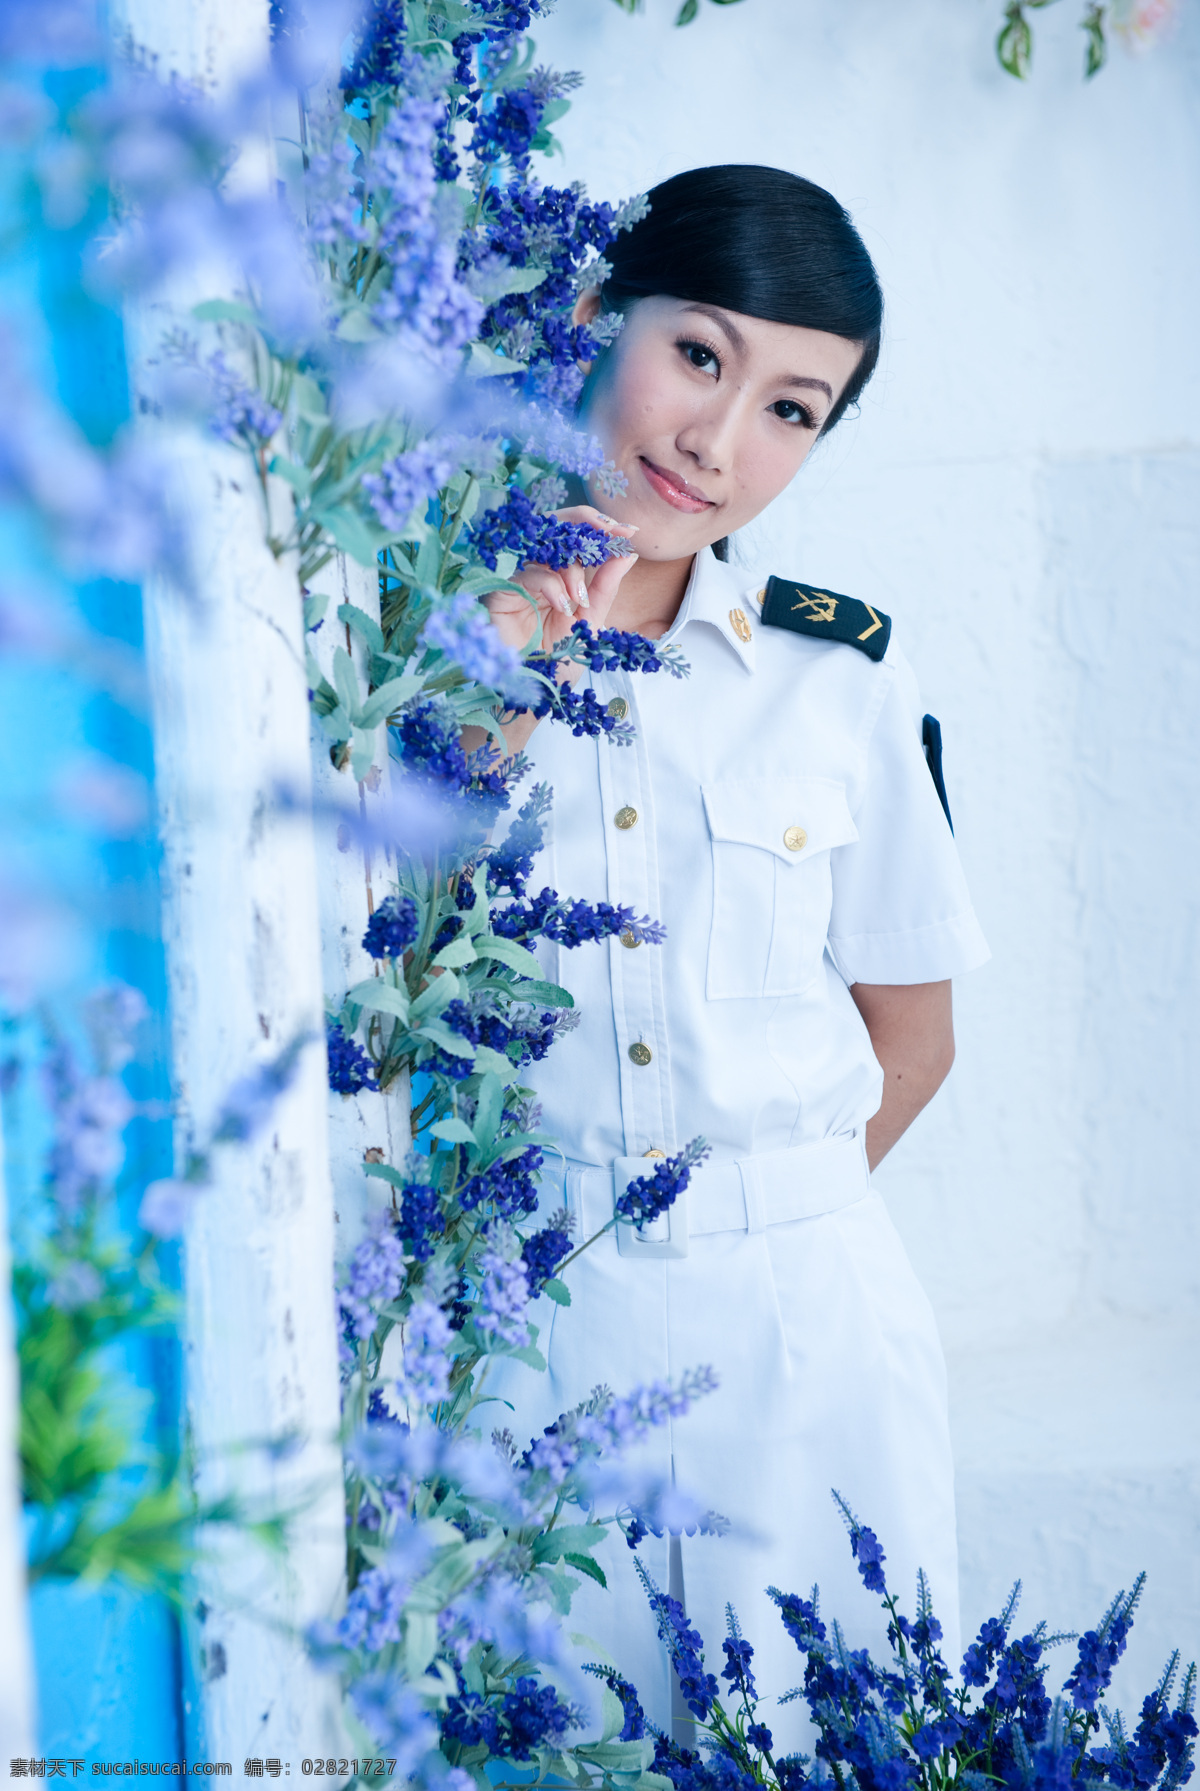 海军女兵 白色海军制服 薰衣草 爱色柱子 白色墙壁 背手 女兵常服 海军女学员 世纪美少女 女性女人 人物图库